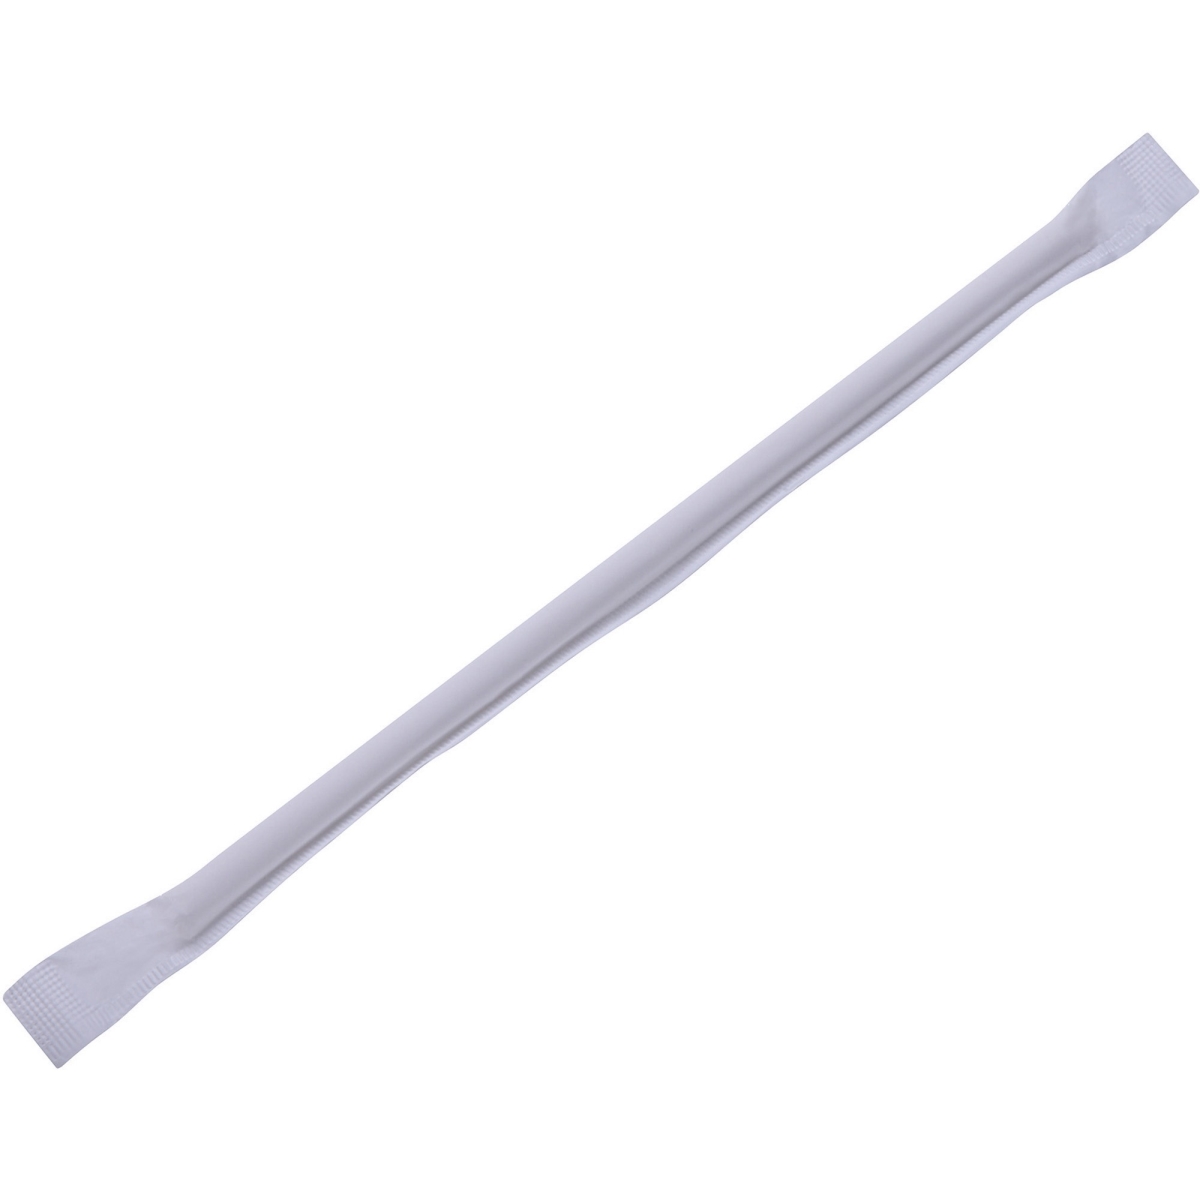 Gjo58945 Paper Straws, White - Box Of 500